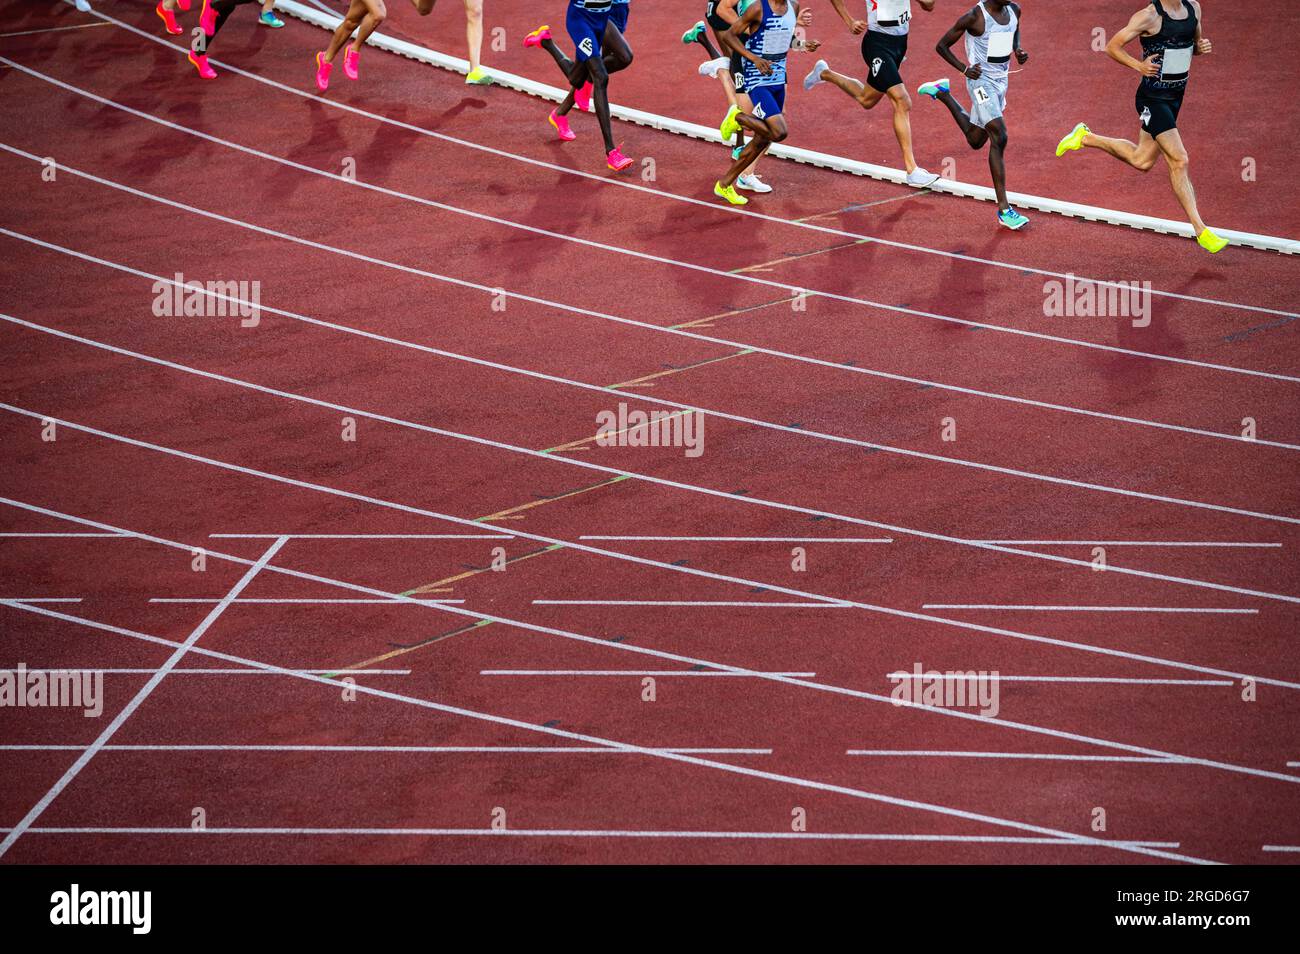 Mittelstreckenrennen während der Leichtathletik-Veranstaltung mit männlichen Athleten auf der Leichtathletik-Rennstrecke. Beine von Sportlern, roter Bearbeitungsbereich. Sportfoto Stockfoto